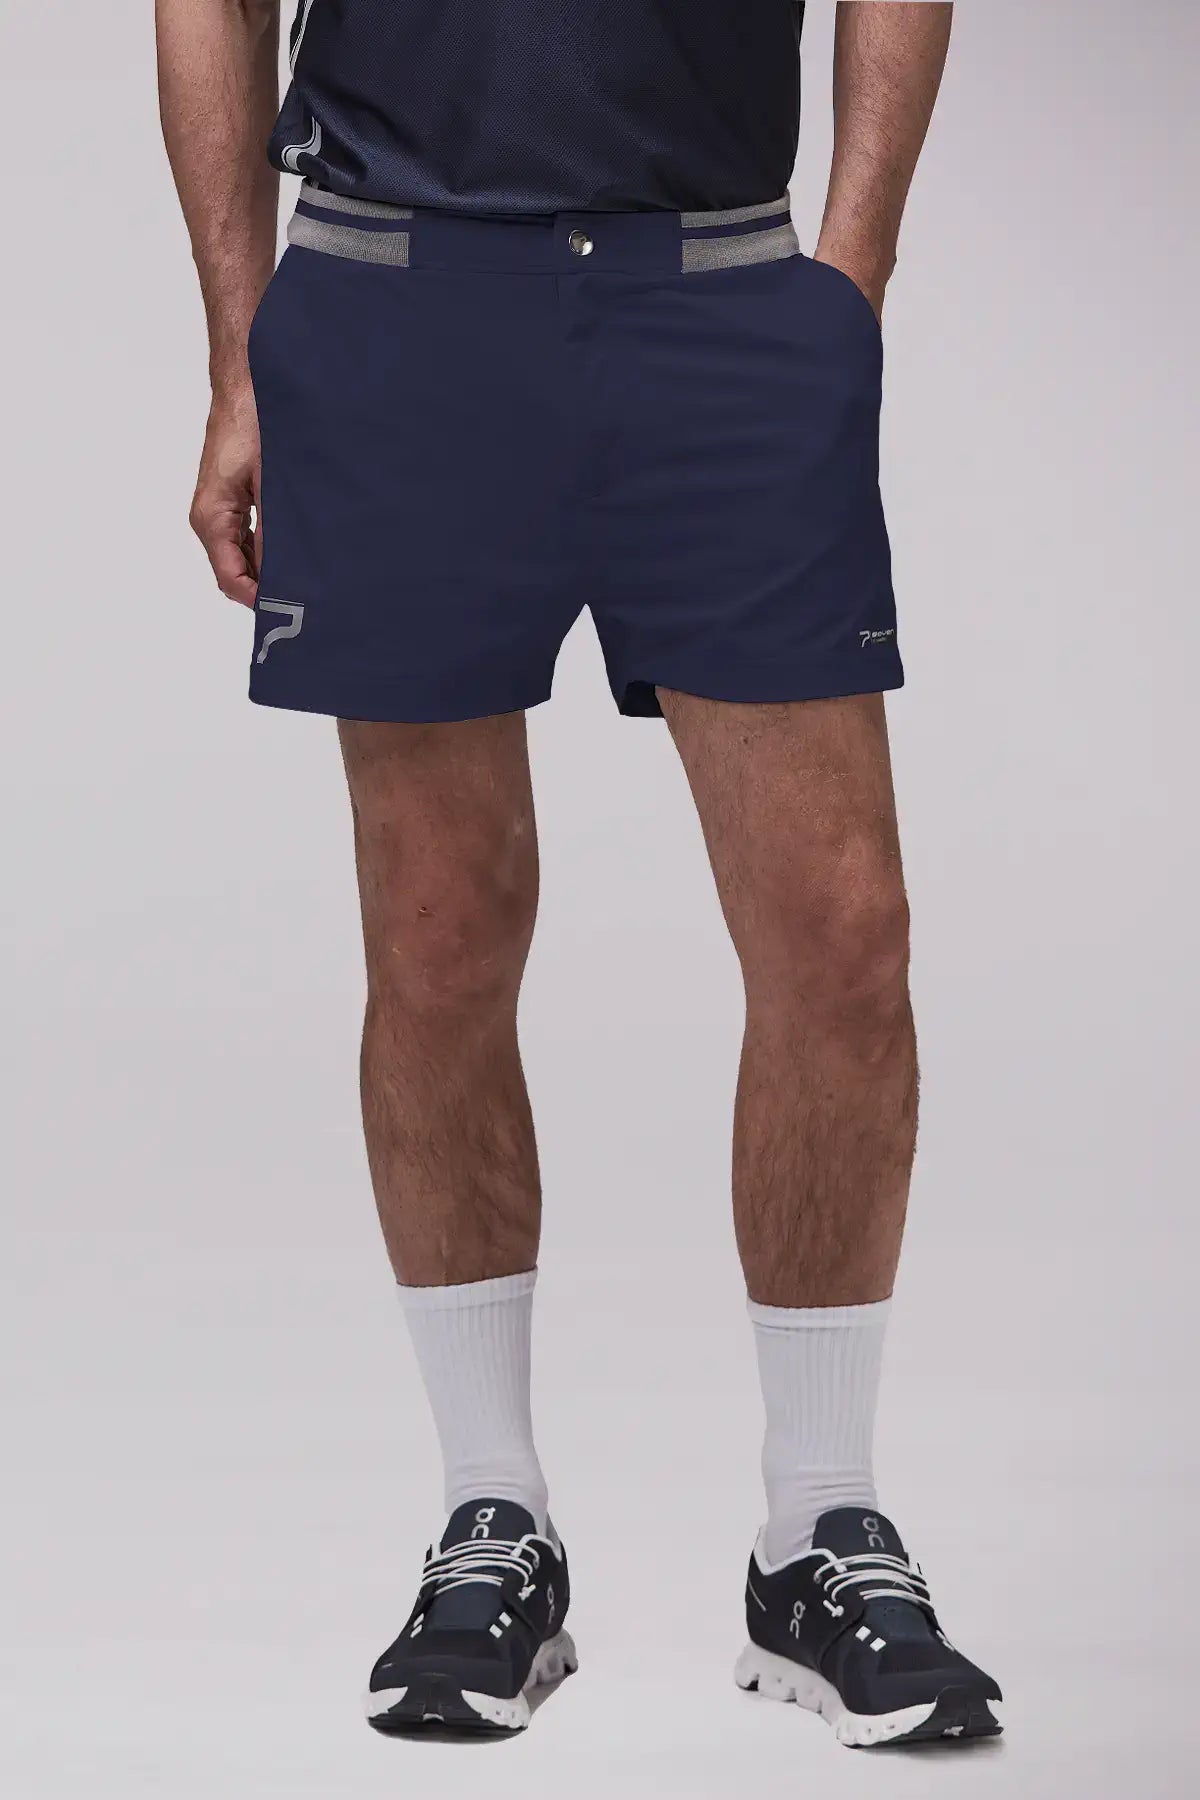 Padel shorts retro navy